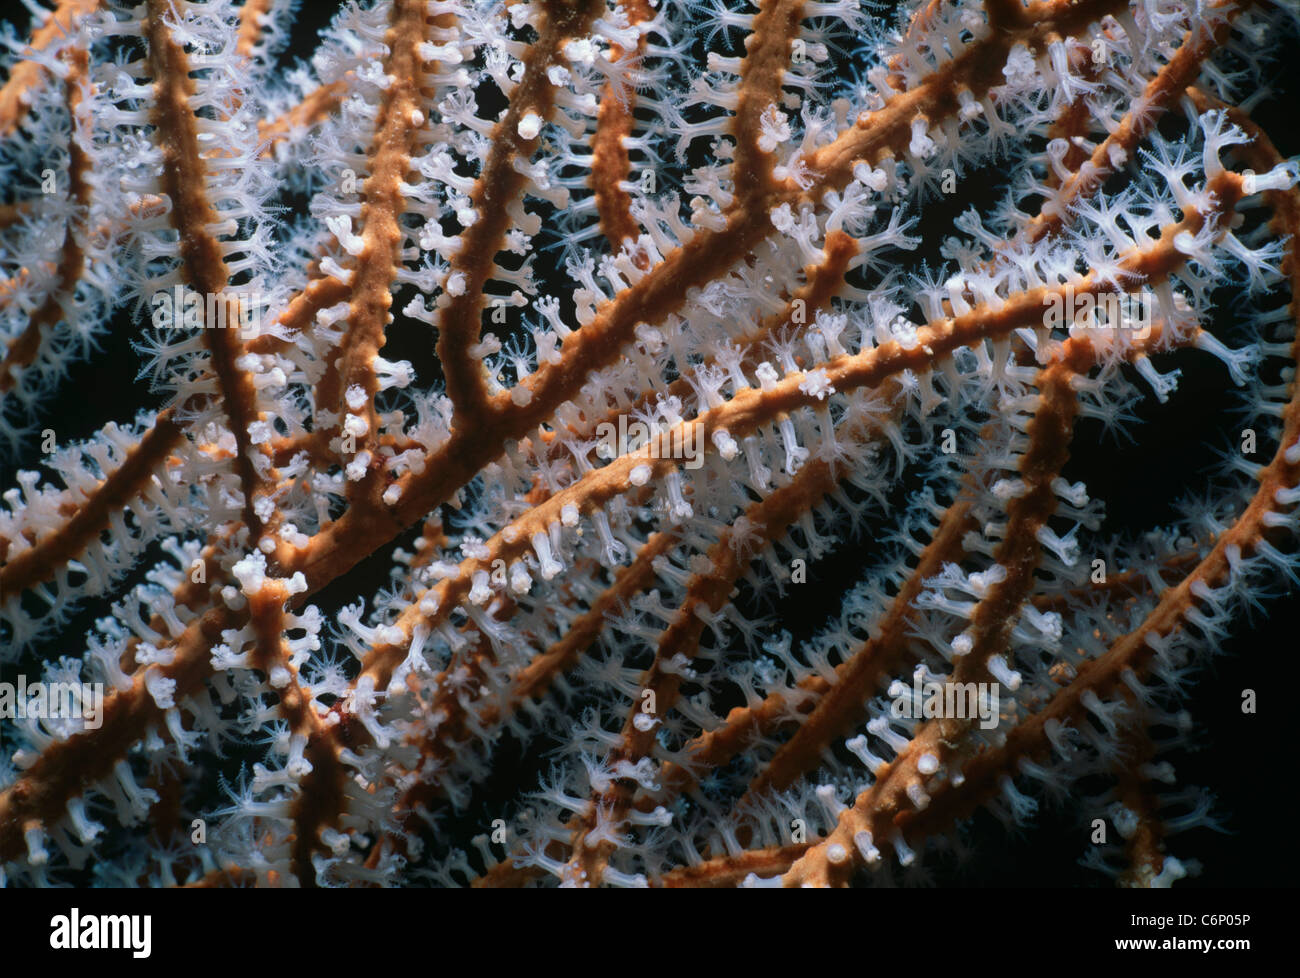 Corallo gorgonia (Gorgonacea) polipi di apertura e l'assorbimento di plancton. Mar Rosso, Egitto Foto Stock